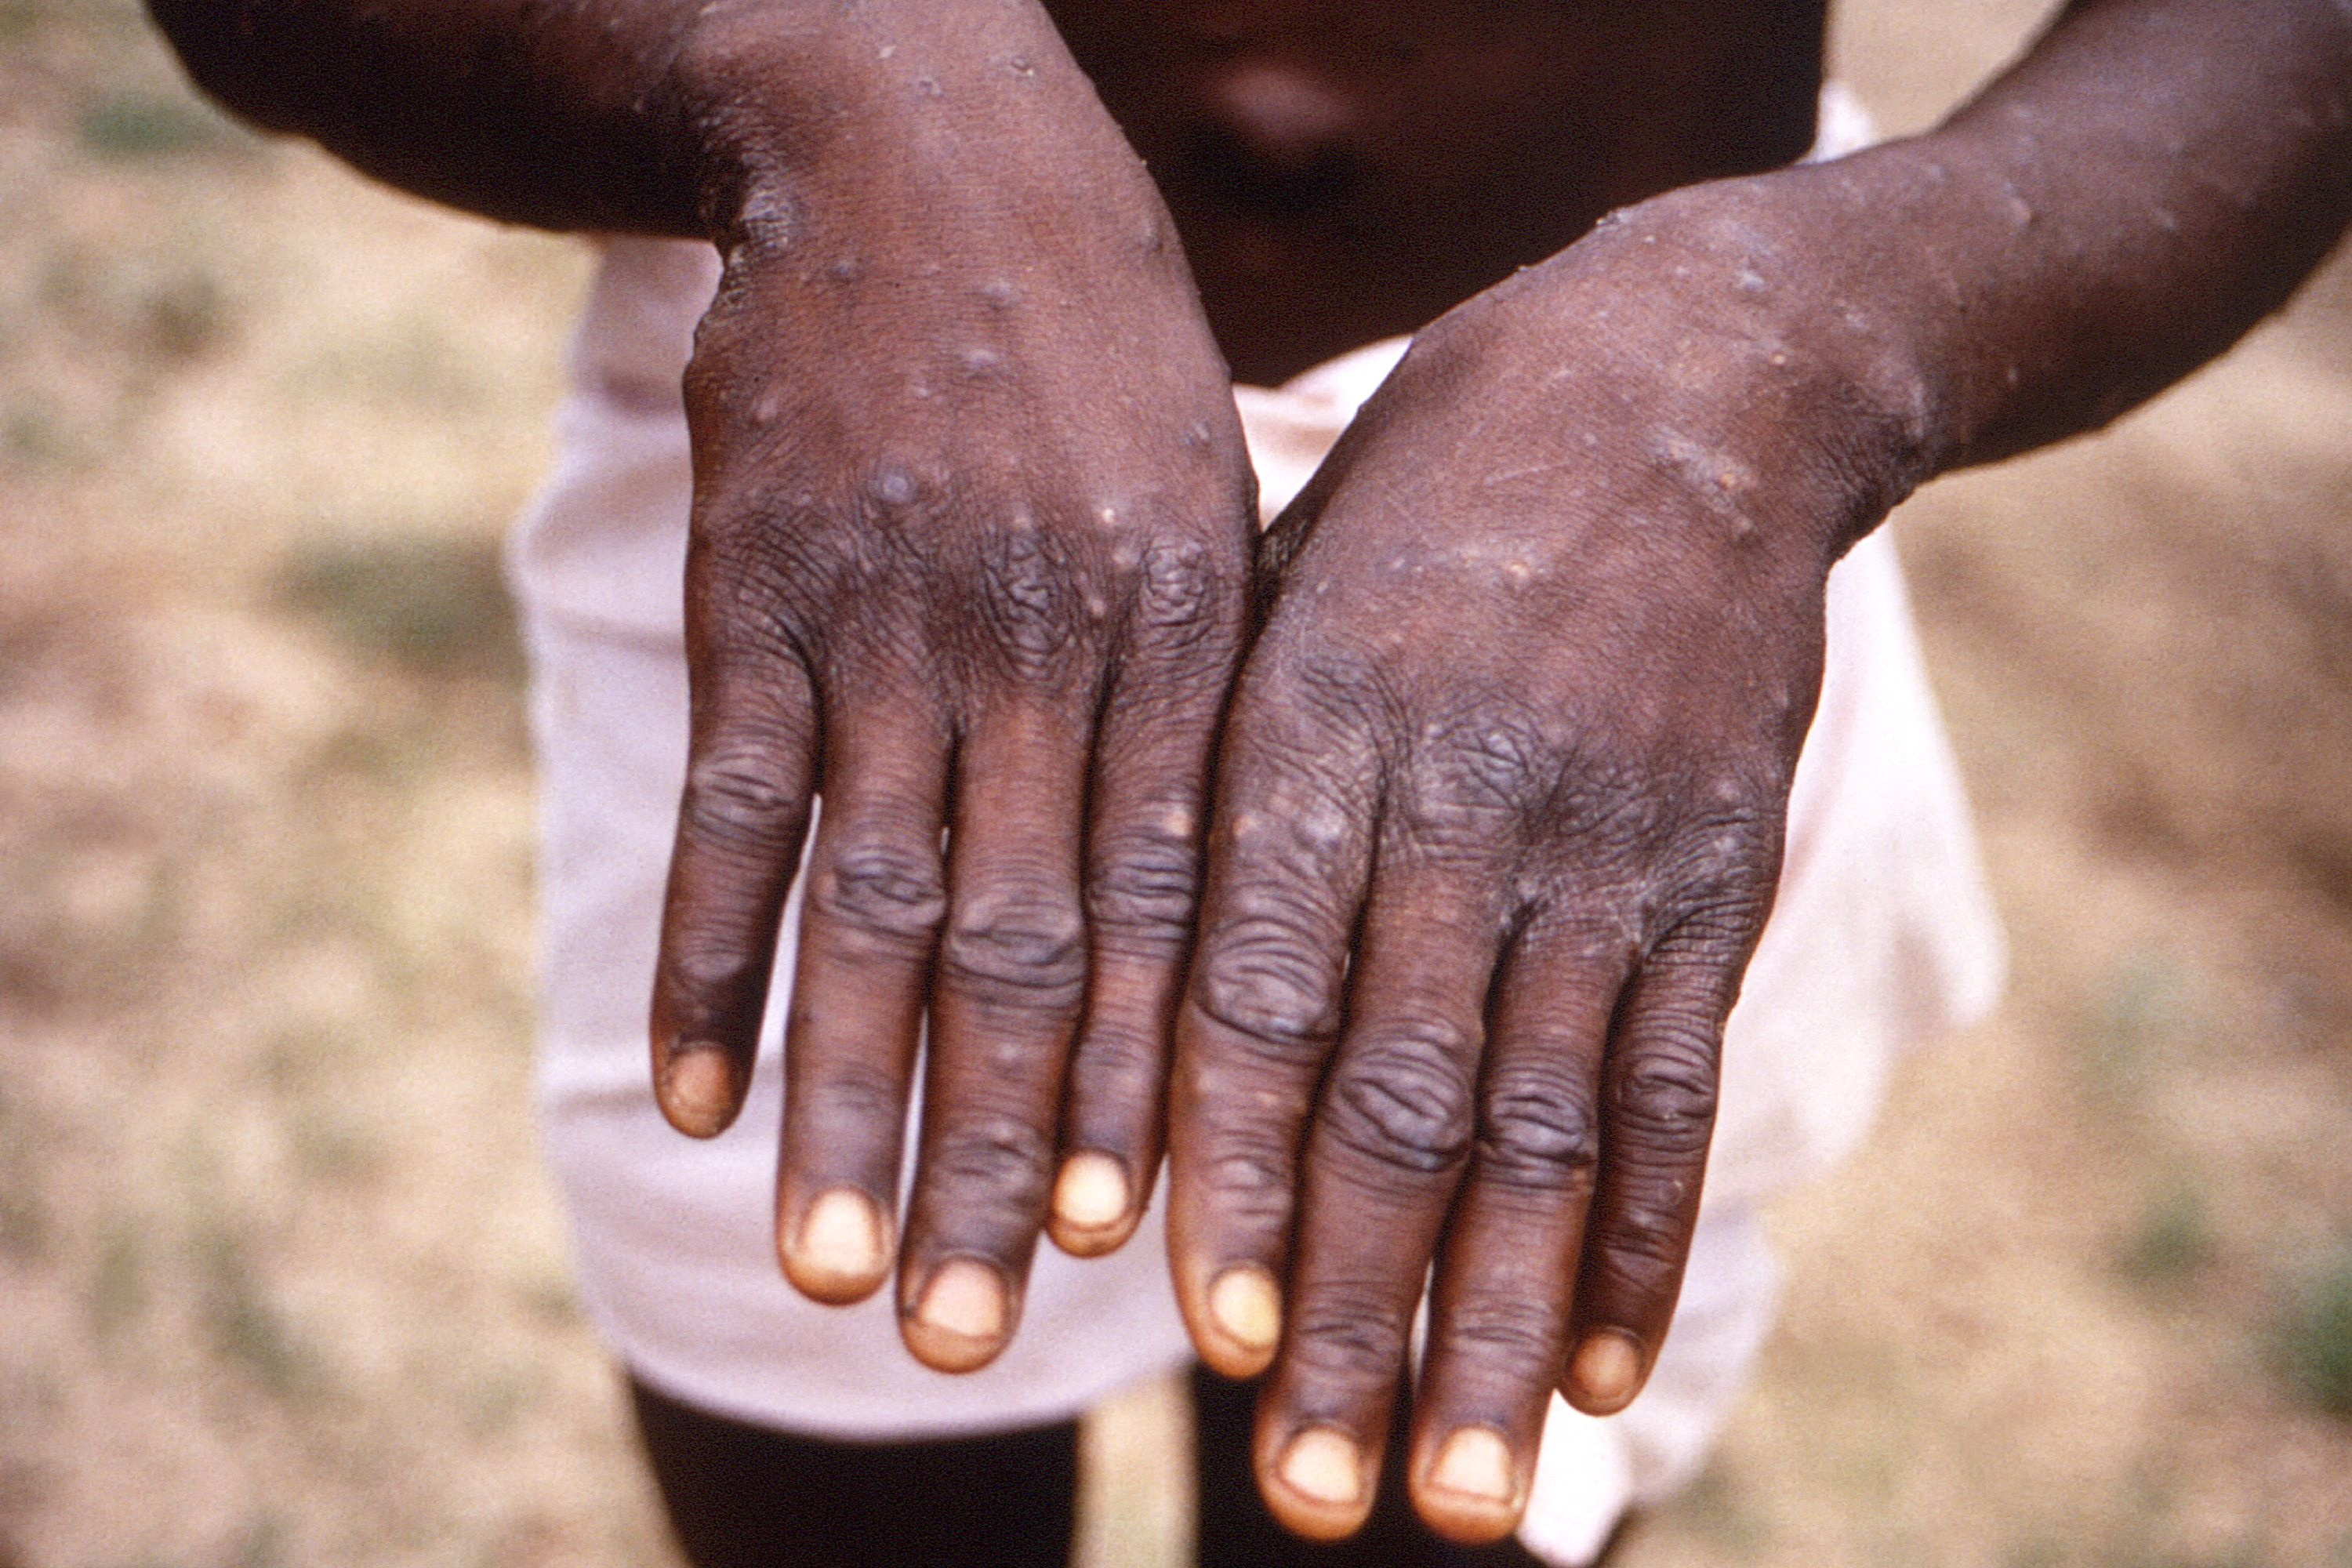 원숭이두창 보도에 계속 사용된 이 사진은 1996년-1997년 사이 콩고민주공화국(DRC)에서 발생한 원숭이두창 조사 중 촬영된 환자의 손이다.